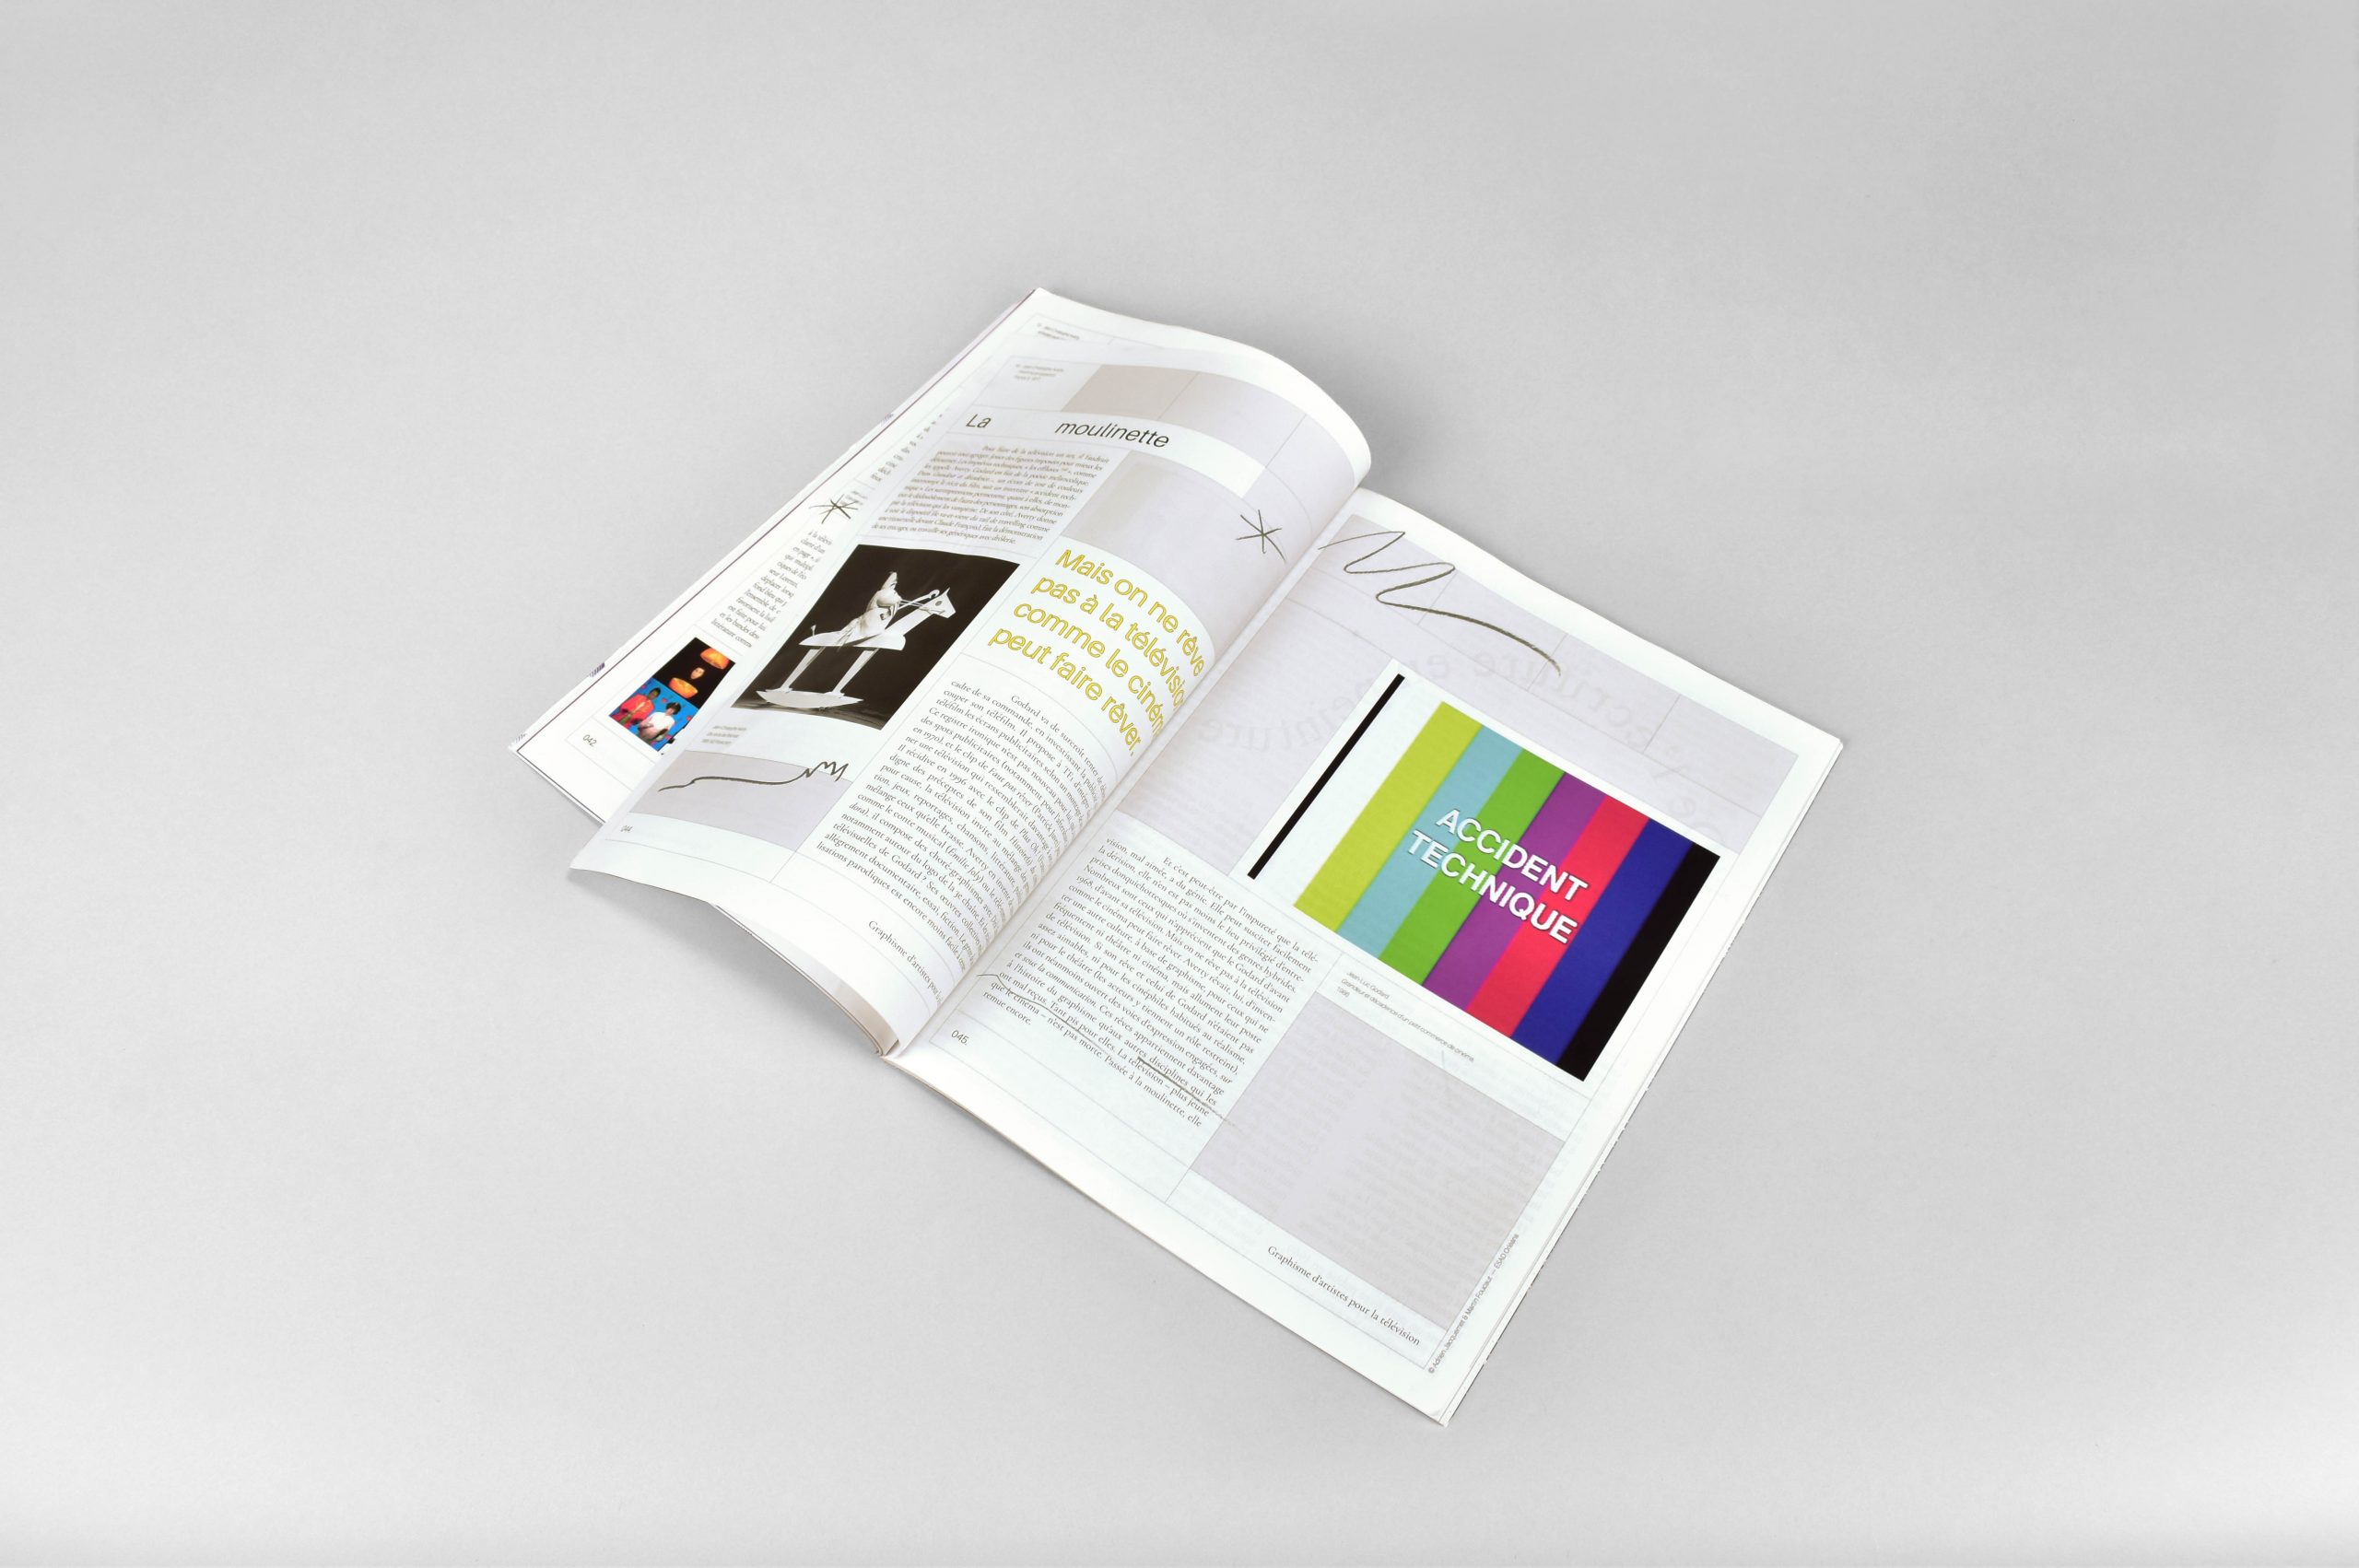 Edition Artpress hors-série n°49
©Adrien Jacquemet & Martin Foucaut - Designer Graphique